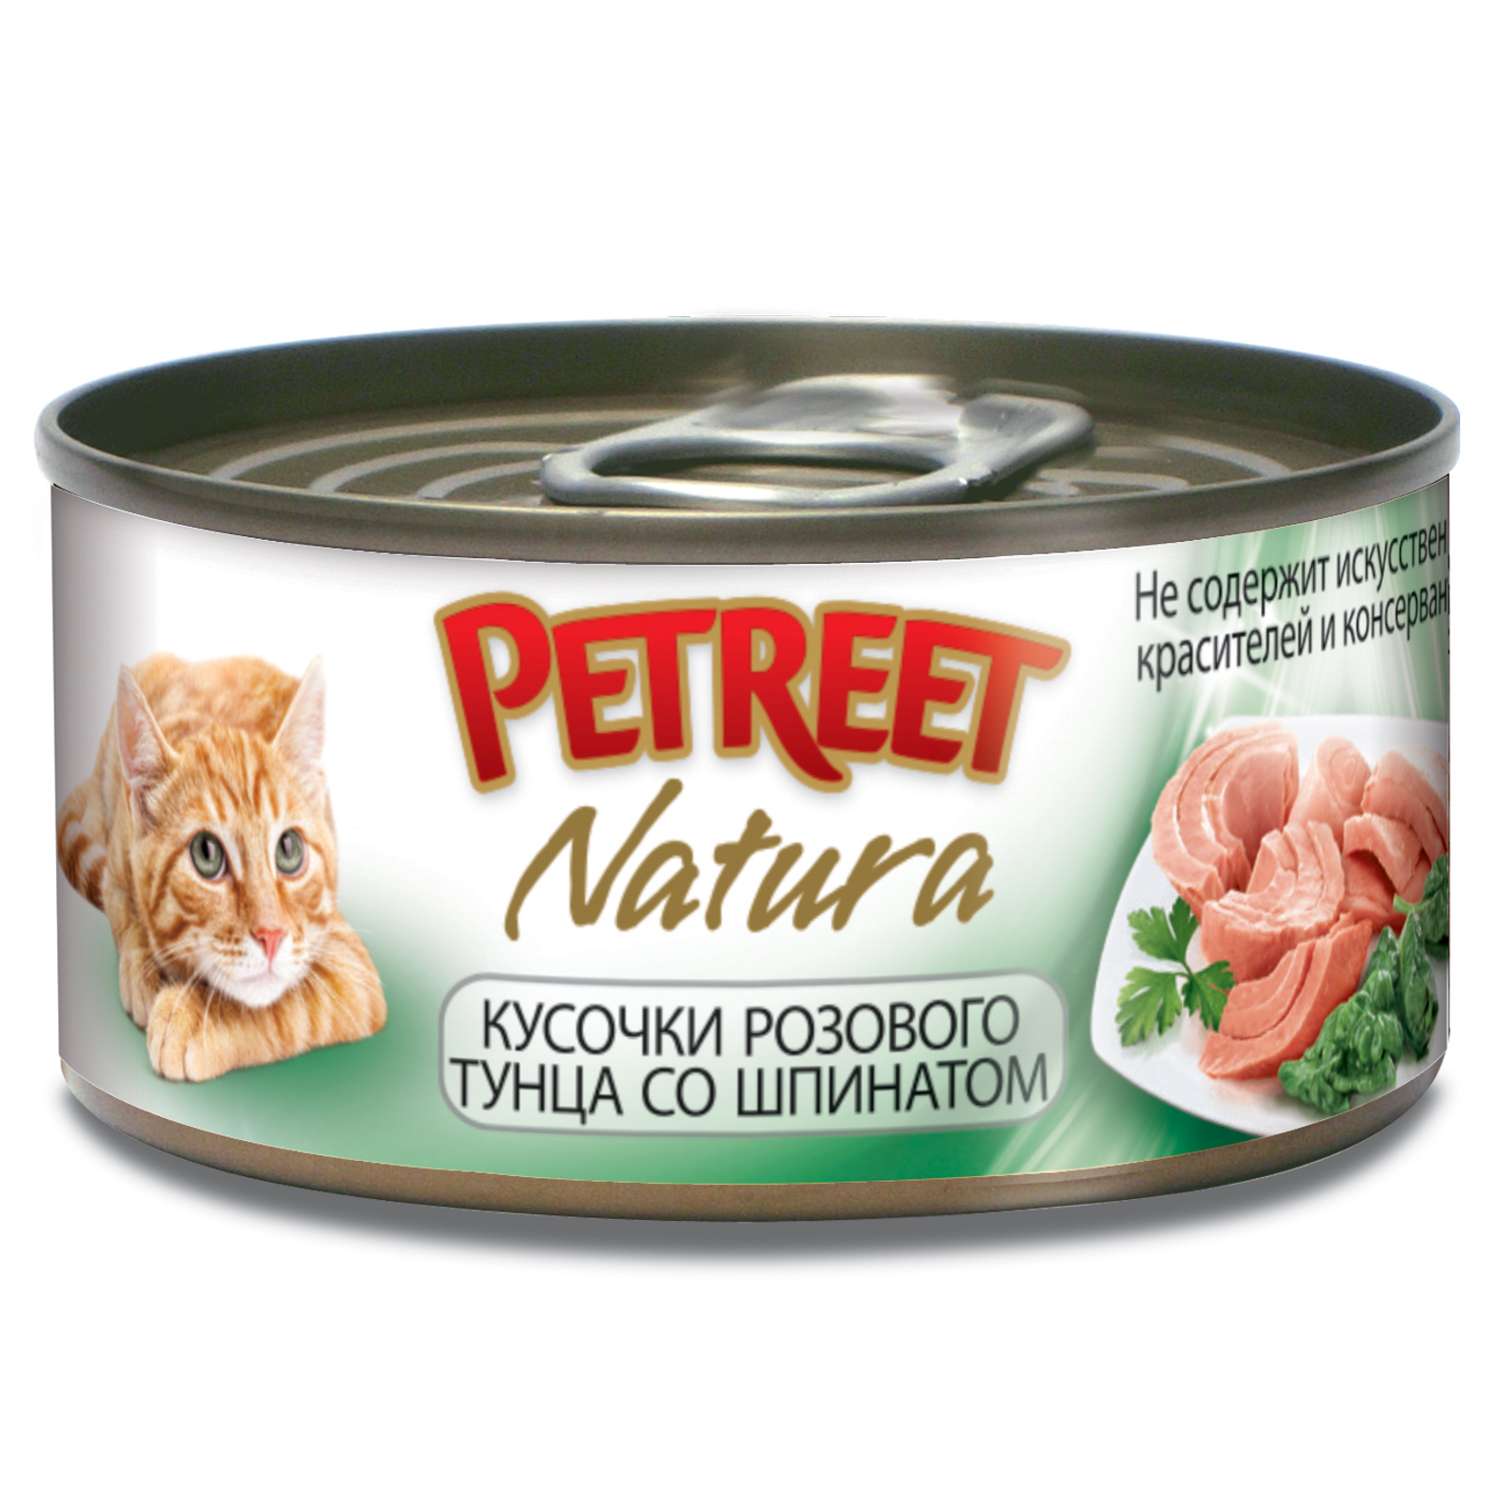 Корм влажный для кошек Petreet 70г усочки розового тунца со шпинатом консервированный - фото 1